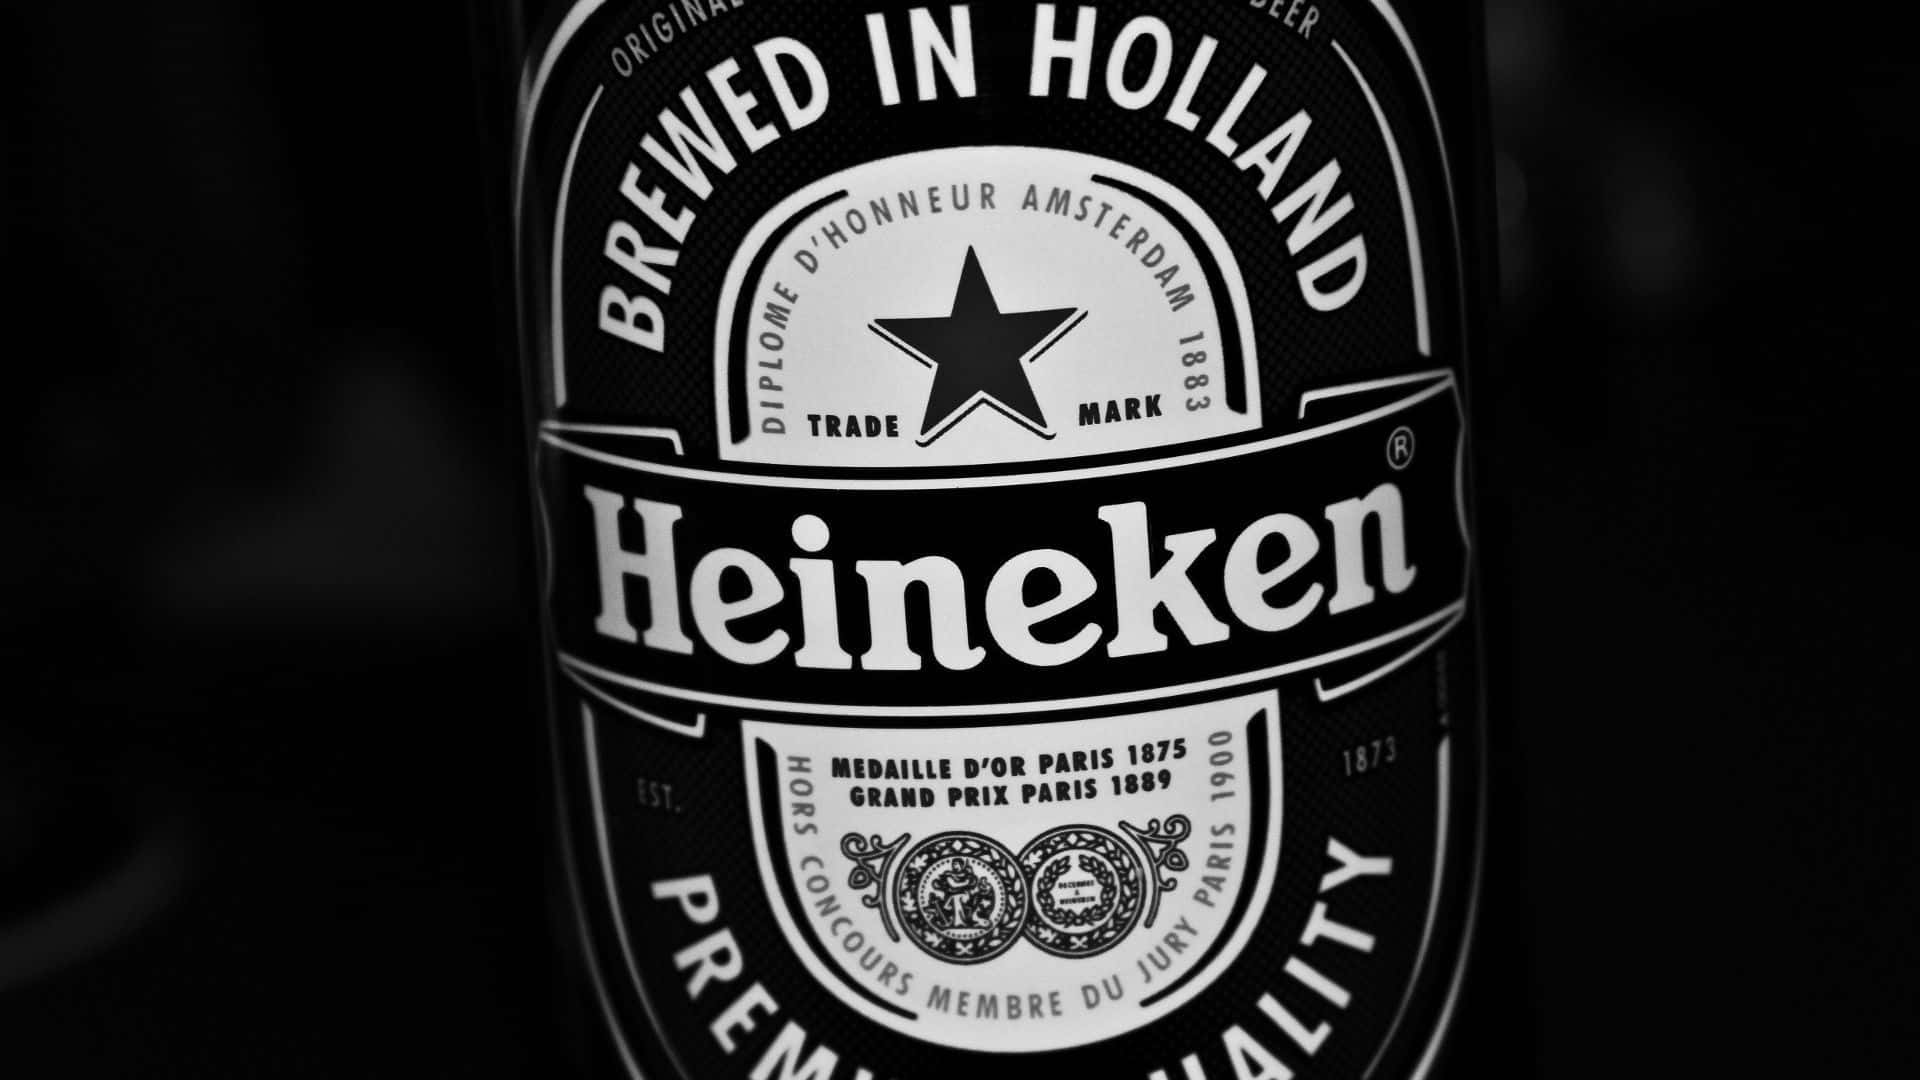 Heineken1920 X 1080 Baggrund.